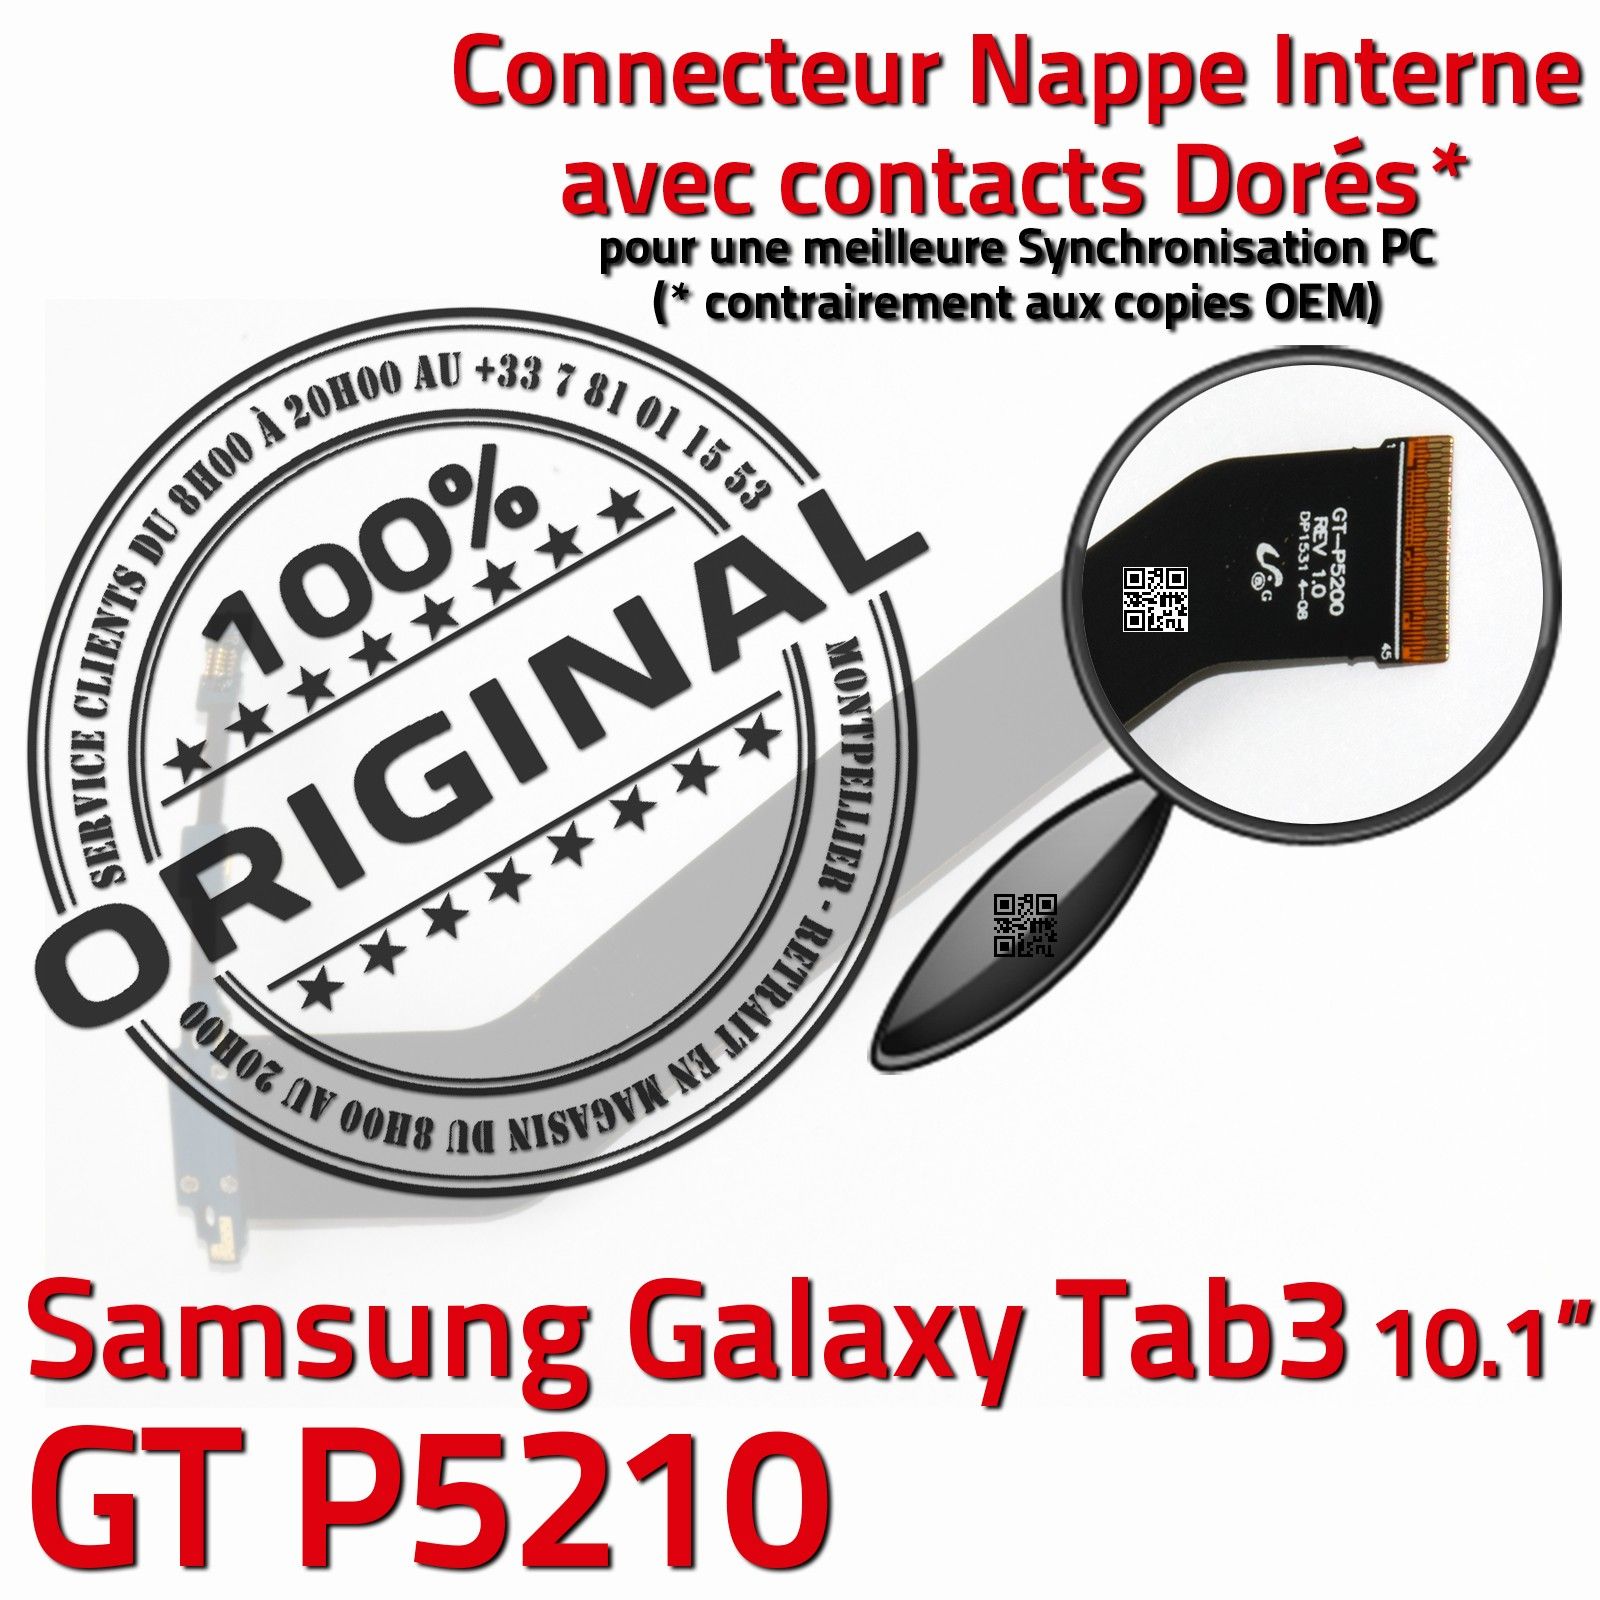 TAB 3 GT P5210 ORIGINAL Samsung Galaxy Connecteur de Charge Chargeur MicroUSB Nappe OFFICIELLE Qualité Contacts Dorés Réparation